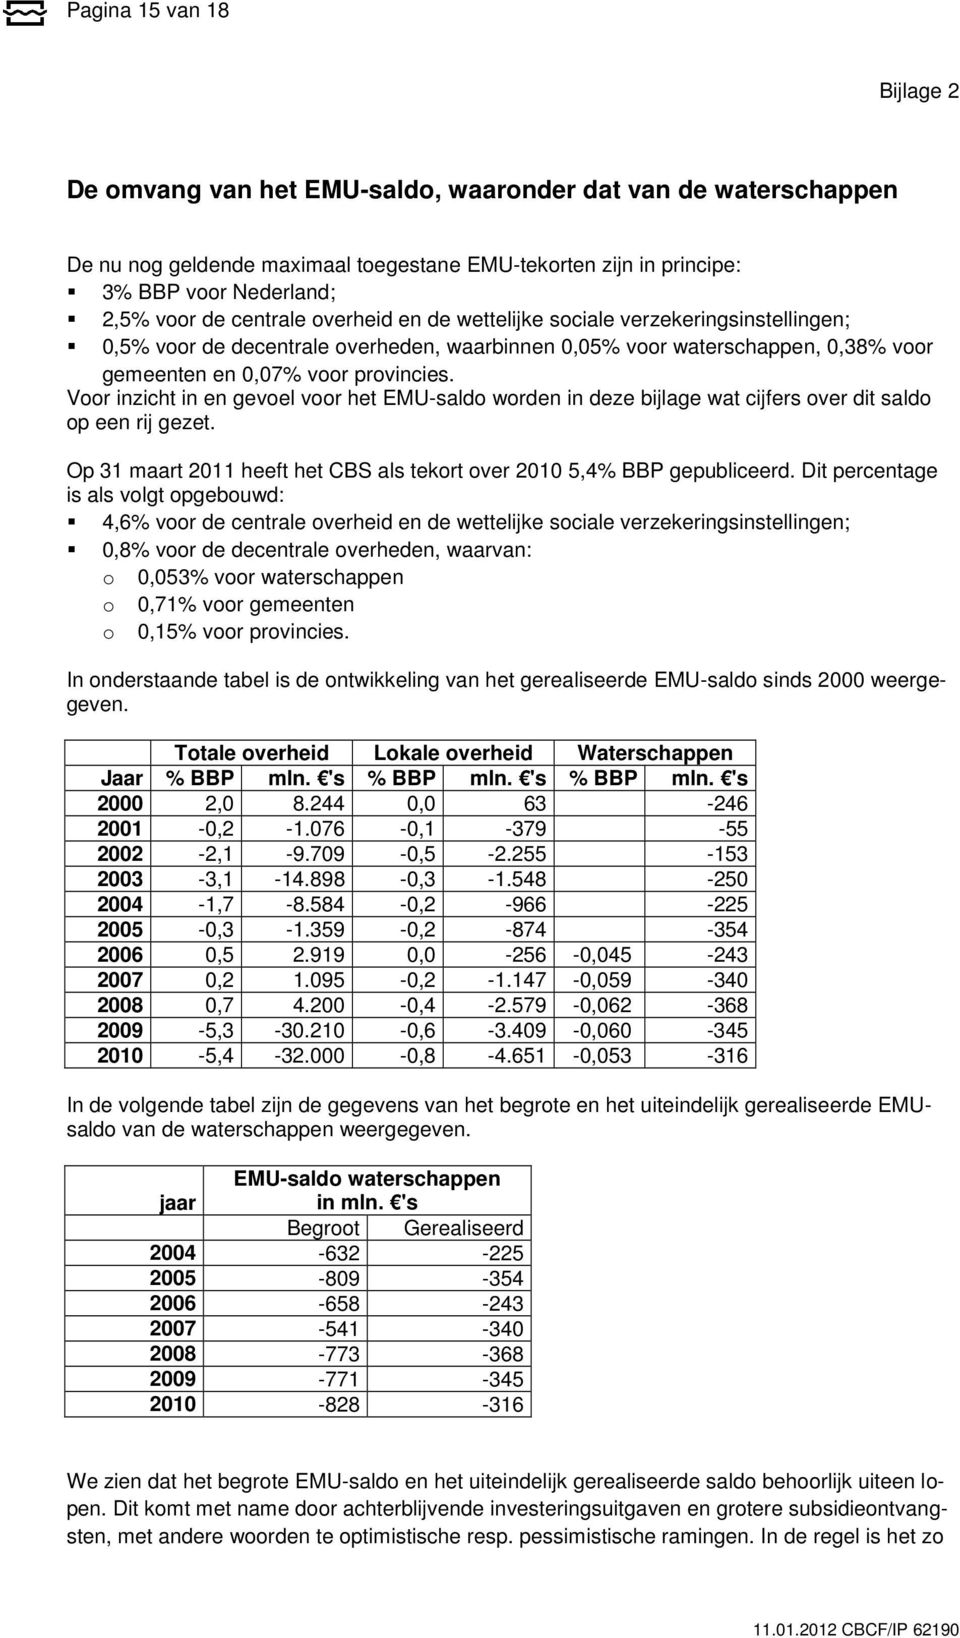 Voor inzicht in en gevoel voor het EMU-saldo worden in deze bijlage wat cijfers over dit saldo op een rij gezet. Op 31 maart 2011 heeft het CBS als tekort over 2010 5,4% BBP gepubliceerd.